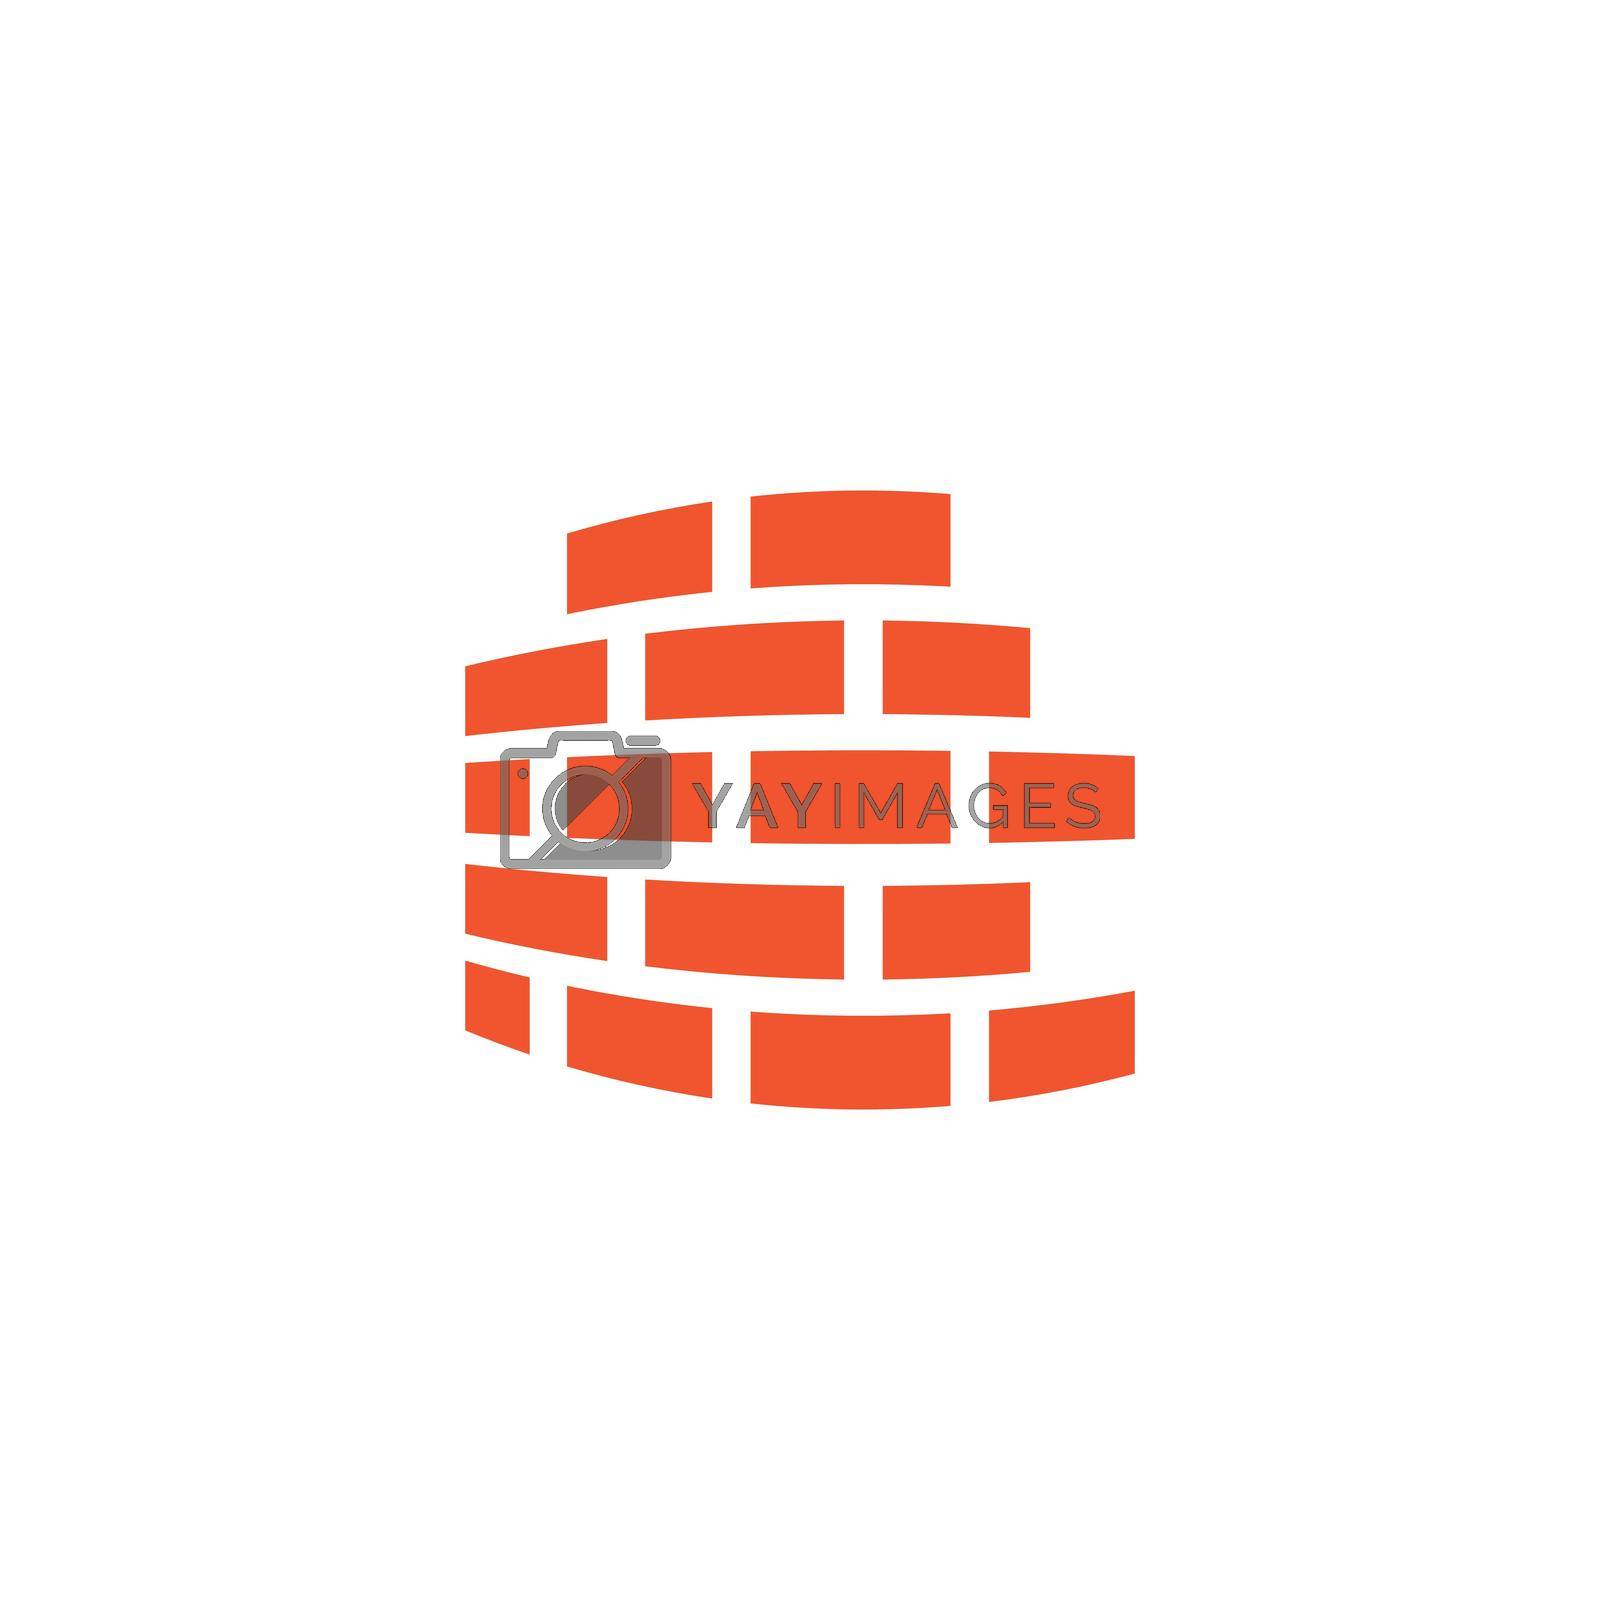 Royalty free image of Brick wall logo vector by awk